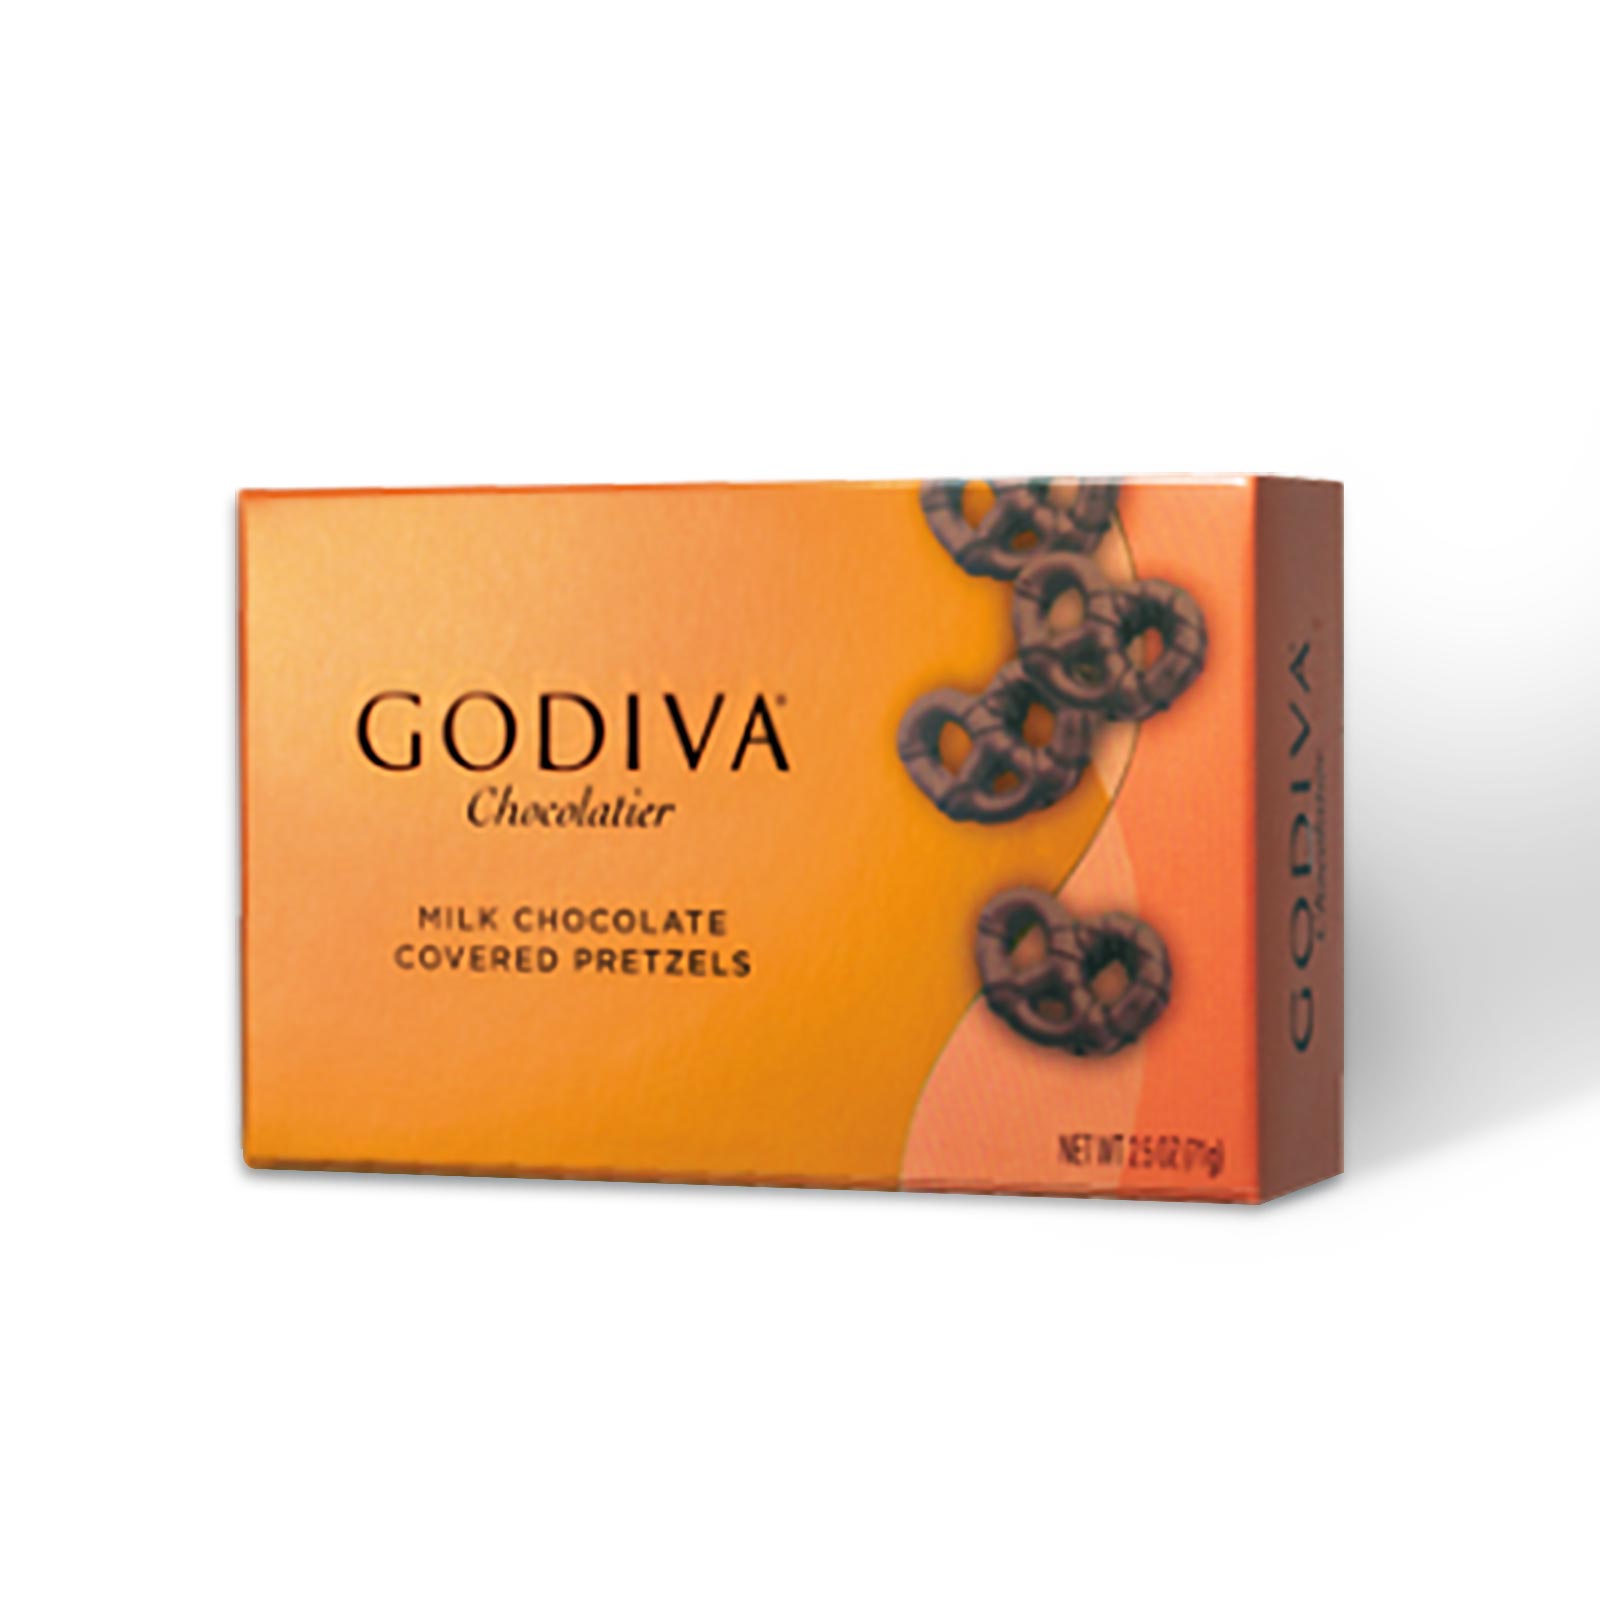 Godiva Milk Chocolate Pretzels - 71g